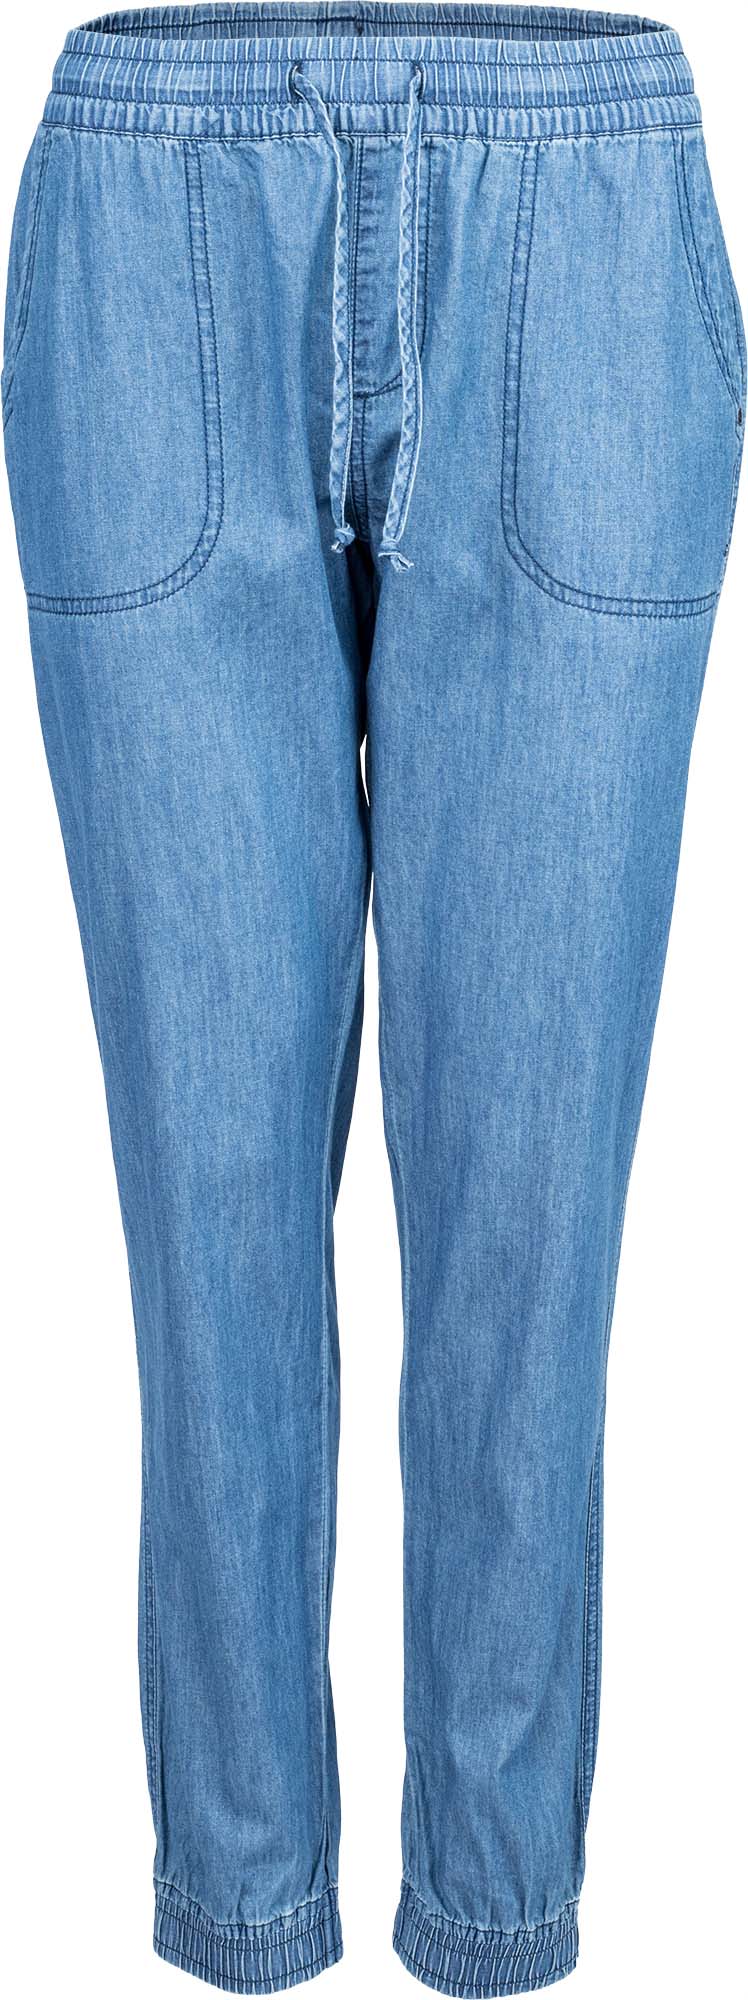 Dámské plátěné kalhoty džínového vzhledu